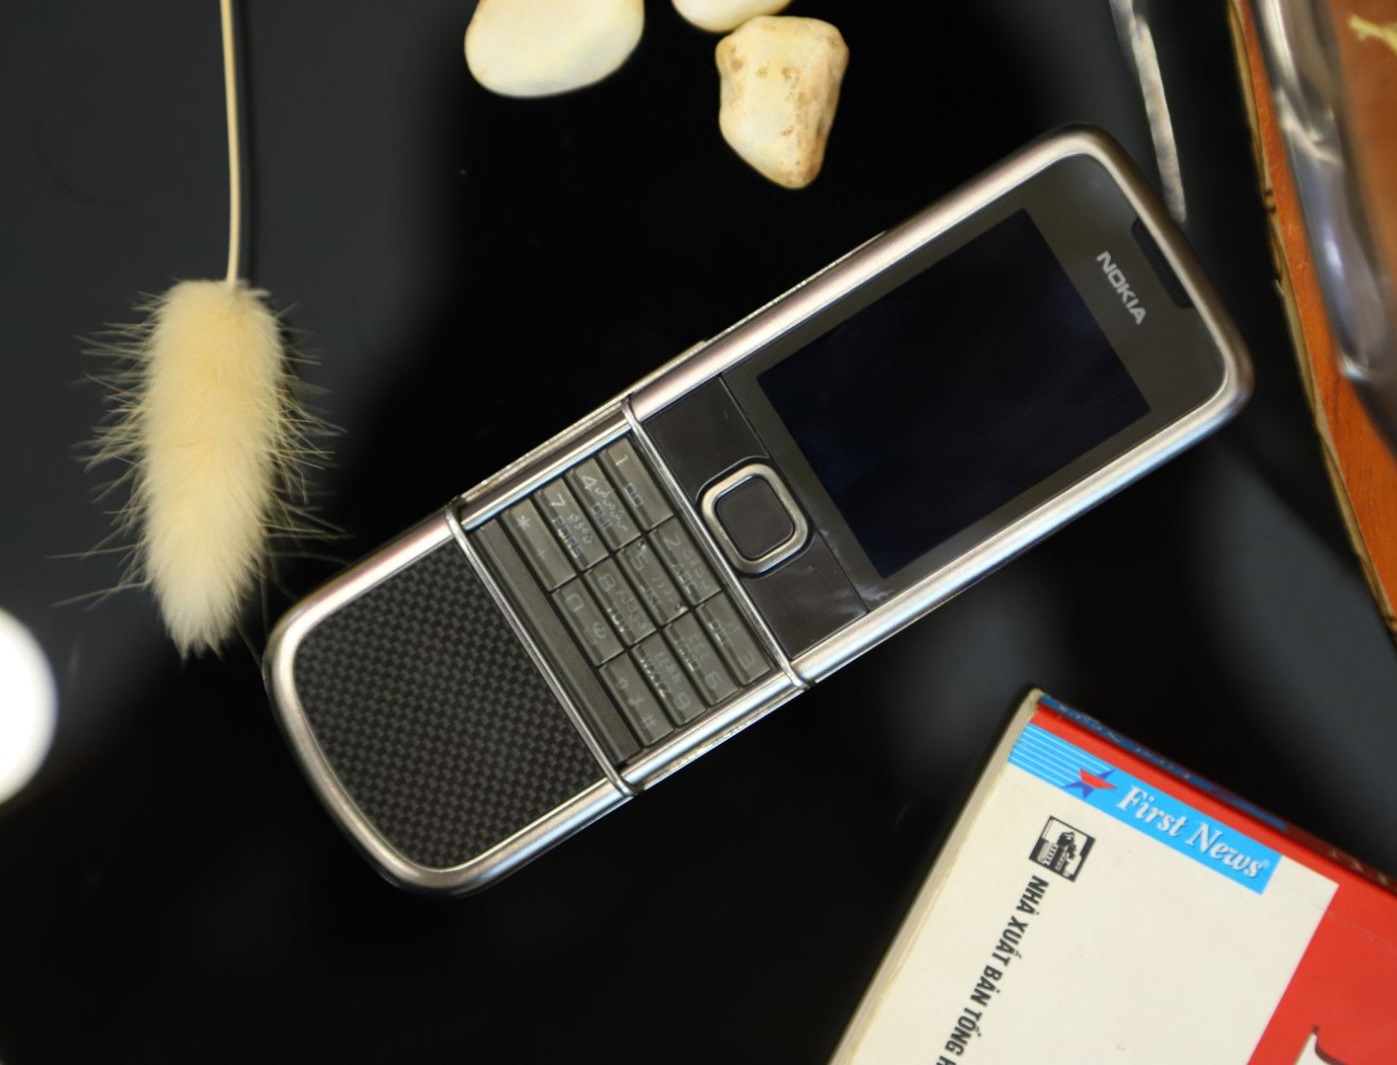 Nokia 8800E Carbon Arte: Sự kết hợp hoàn hảo giữa hình thức và chất lượng. Nokia 8800E Carbon Arte là chiếc điện thoại đẳng cấp đến từng chi tiết nhỏ nhất. Hãy cùng chiêm ngưỡng hình ảnh sản phẩm để hiểu rõ vì sao Nokia lại được yêu thích đến vậy.